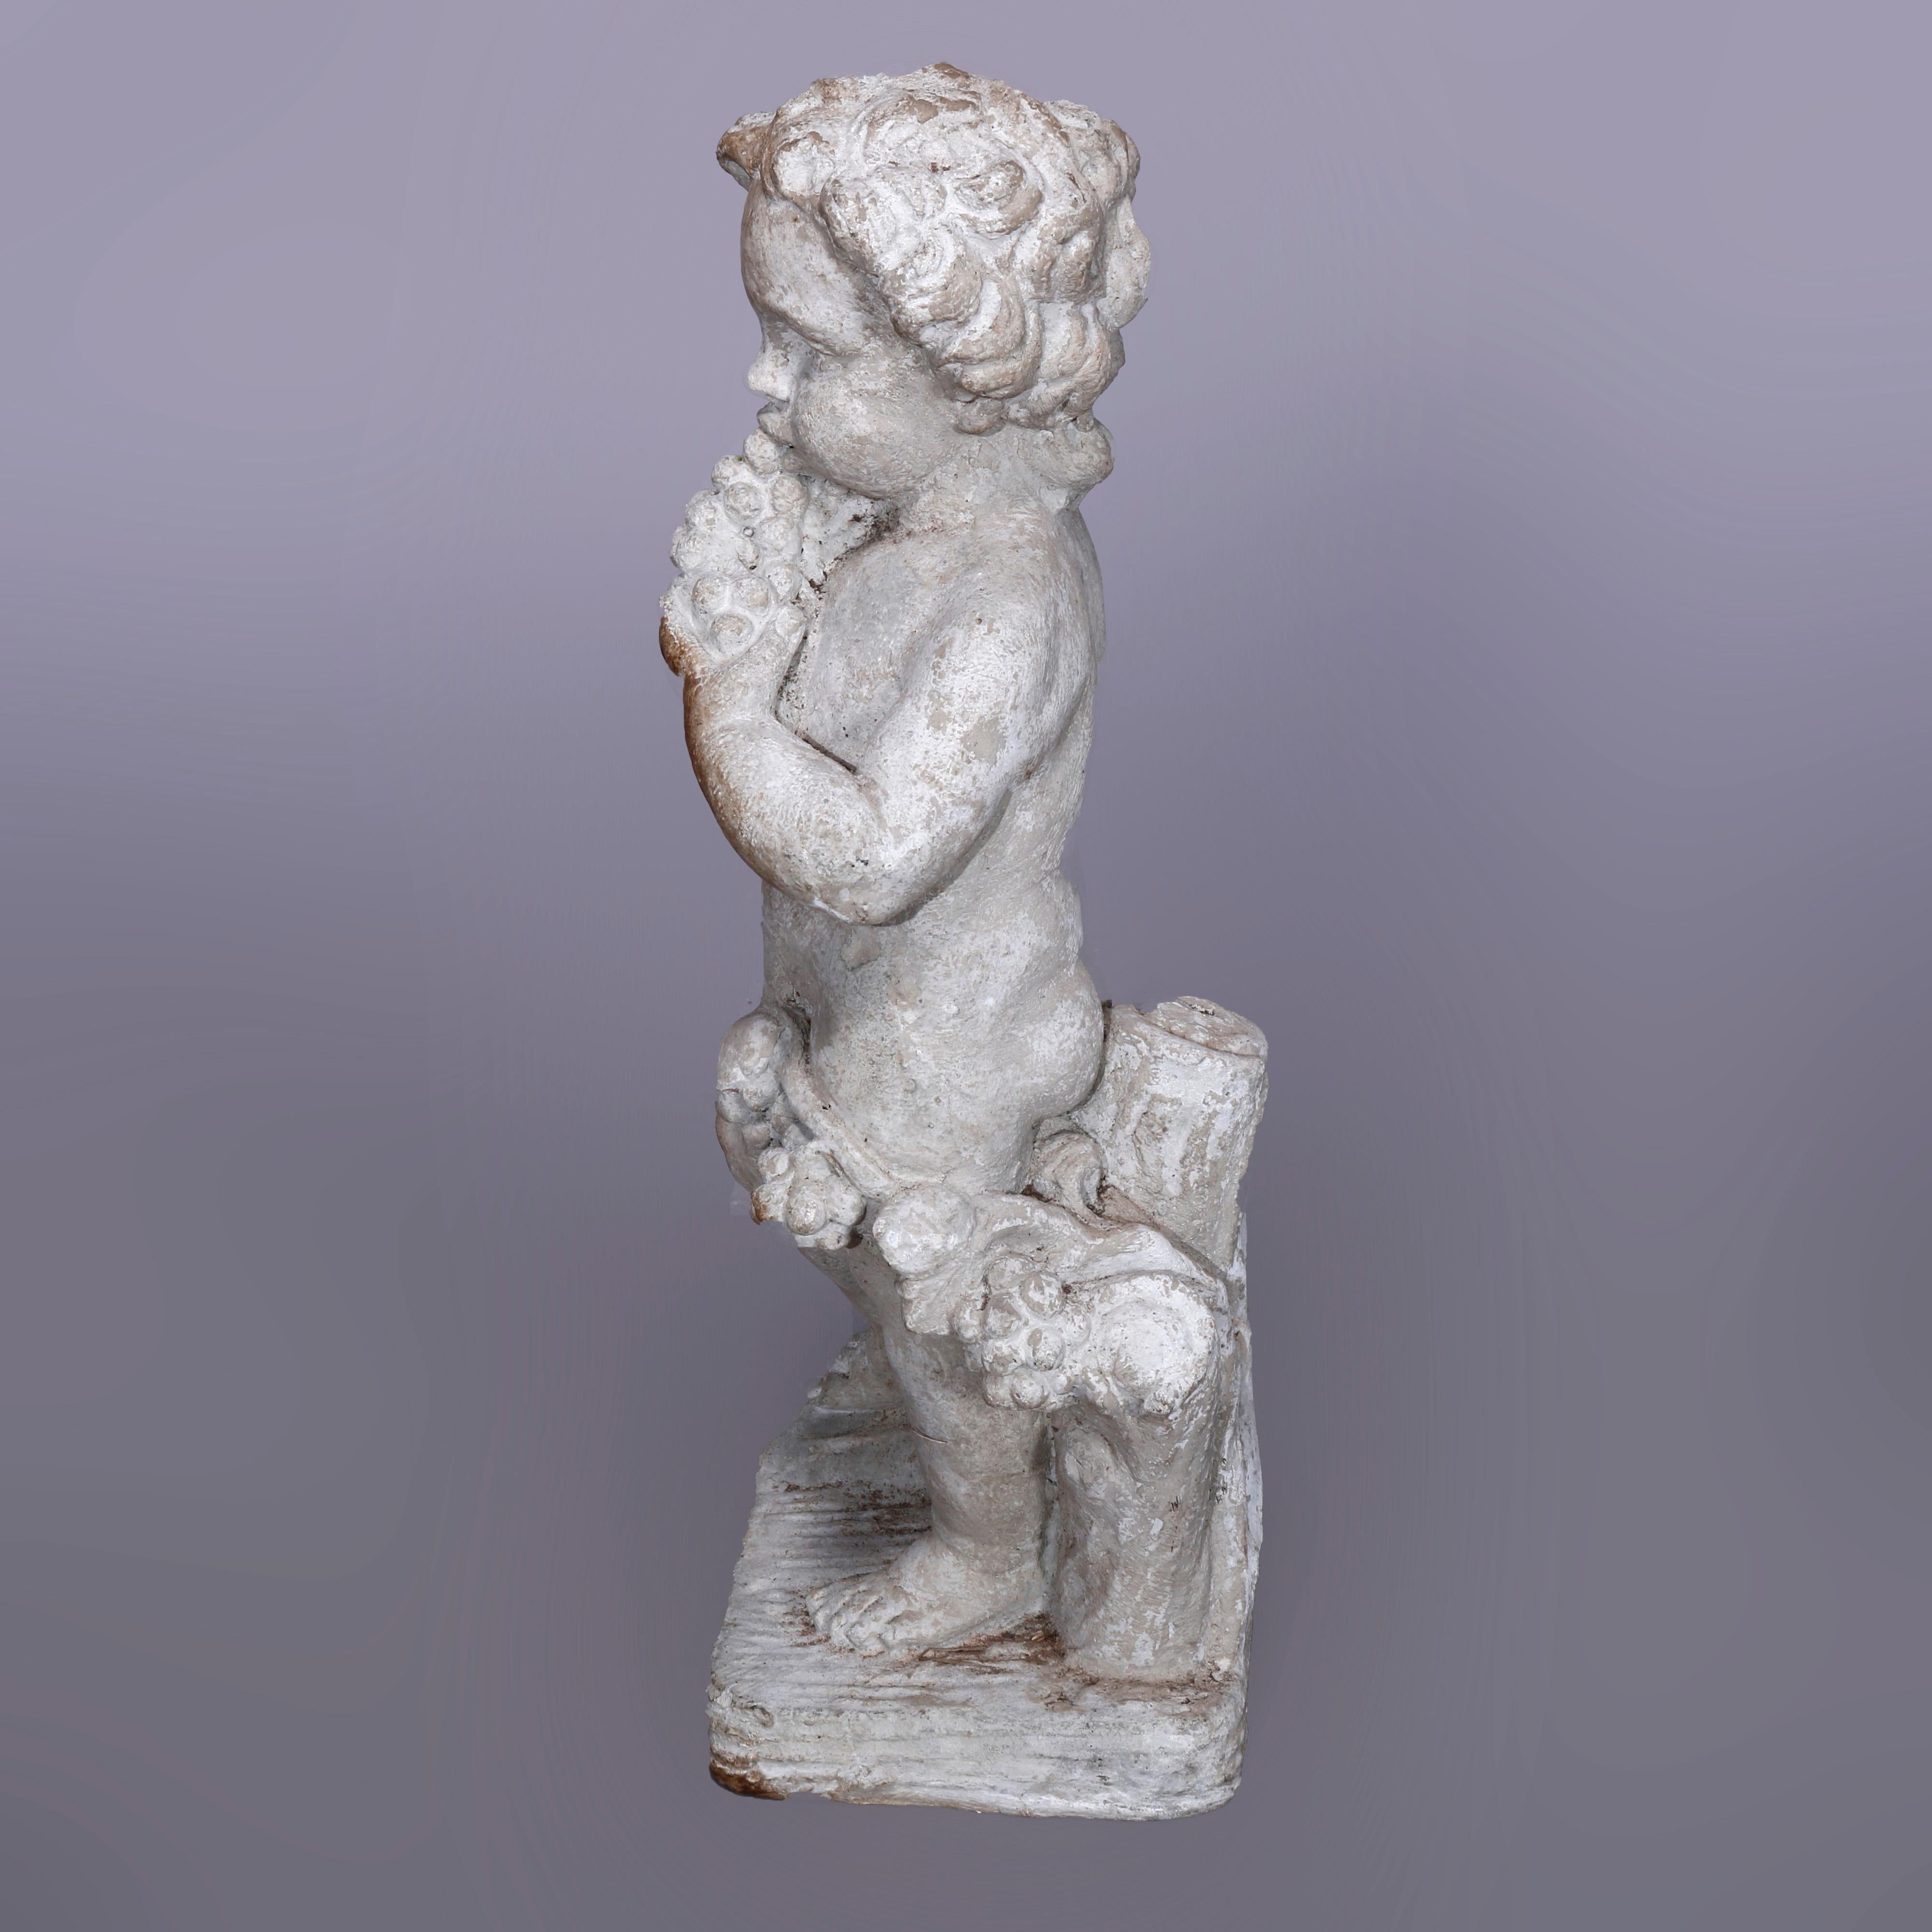 20th Century Neoclassical Figural Cast Hard Stone Garden Statue, Cherub with Grapes, 20th C